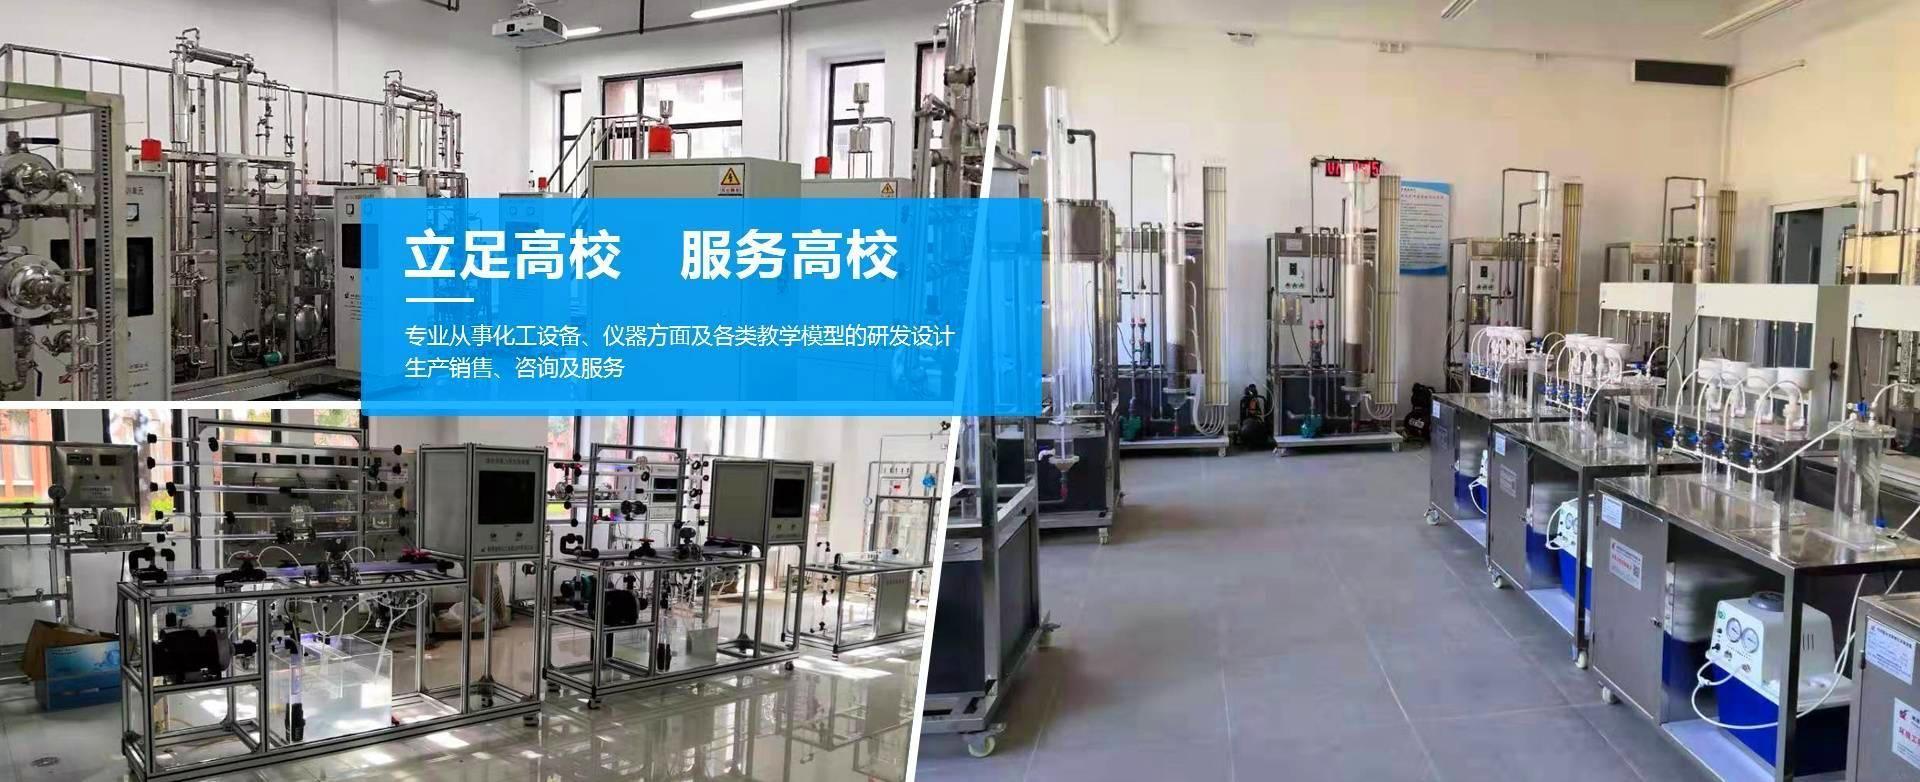 湘潭九游会国际化工装备技术有限公司